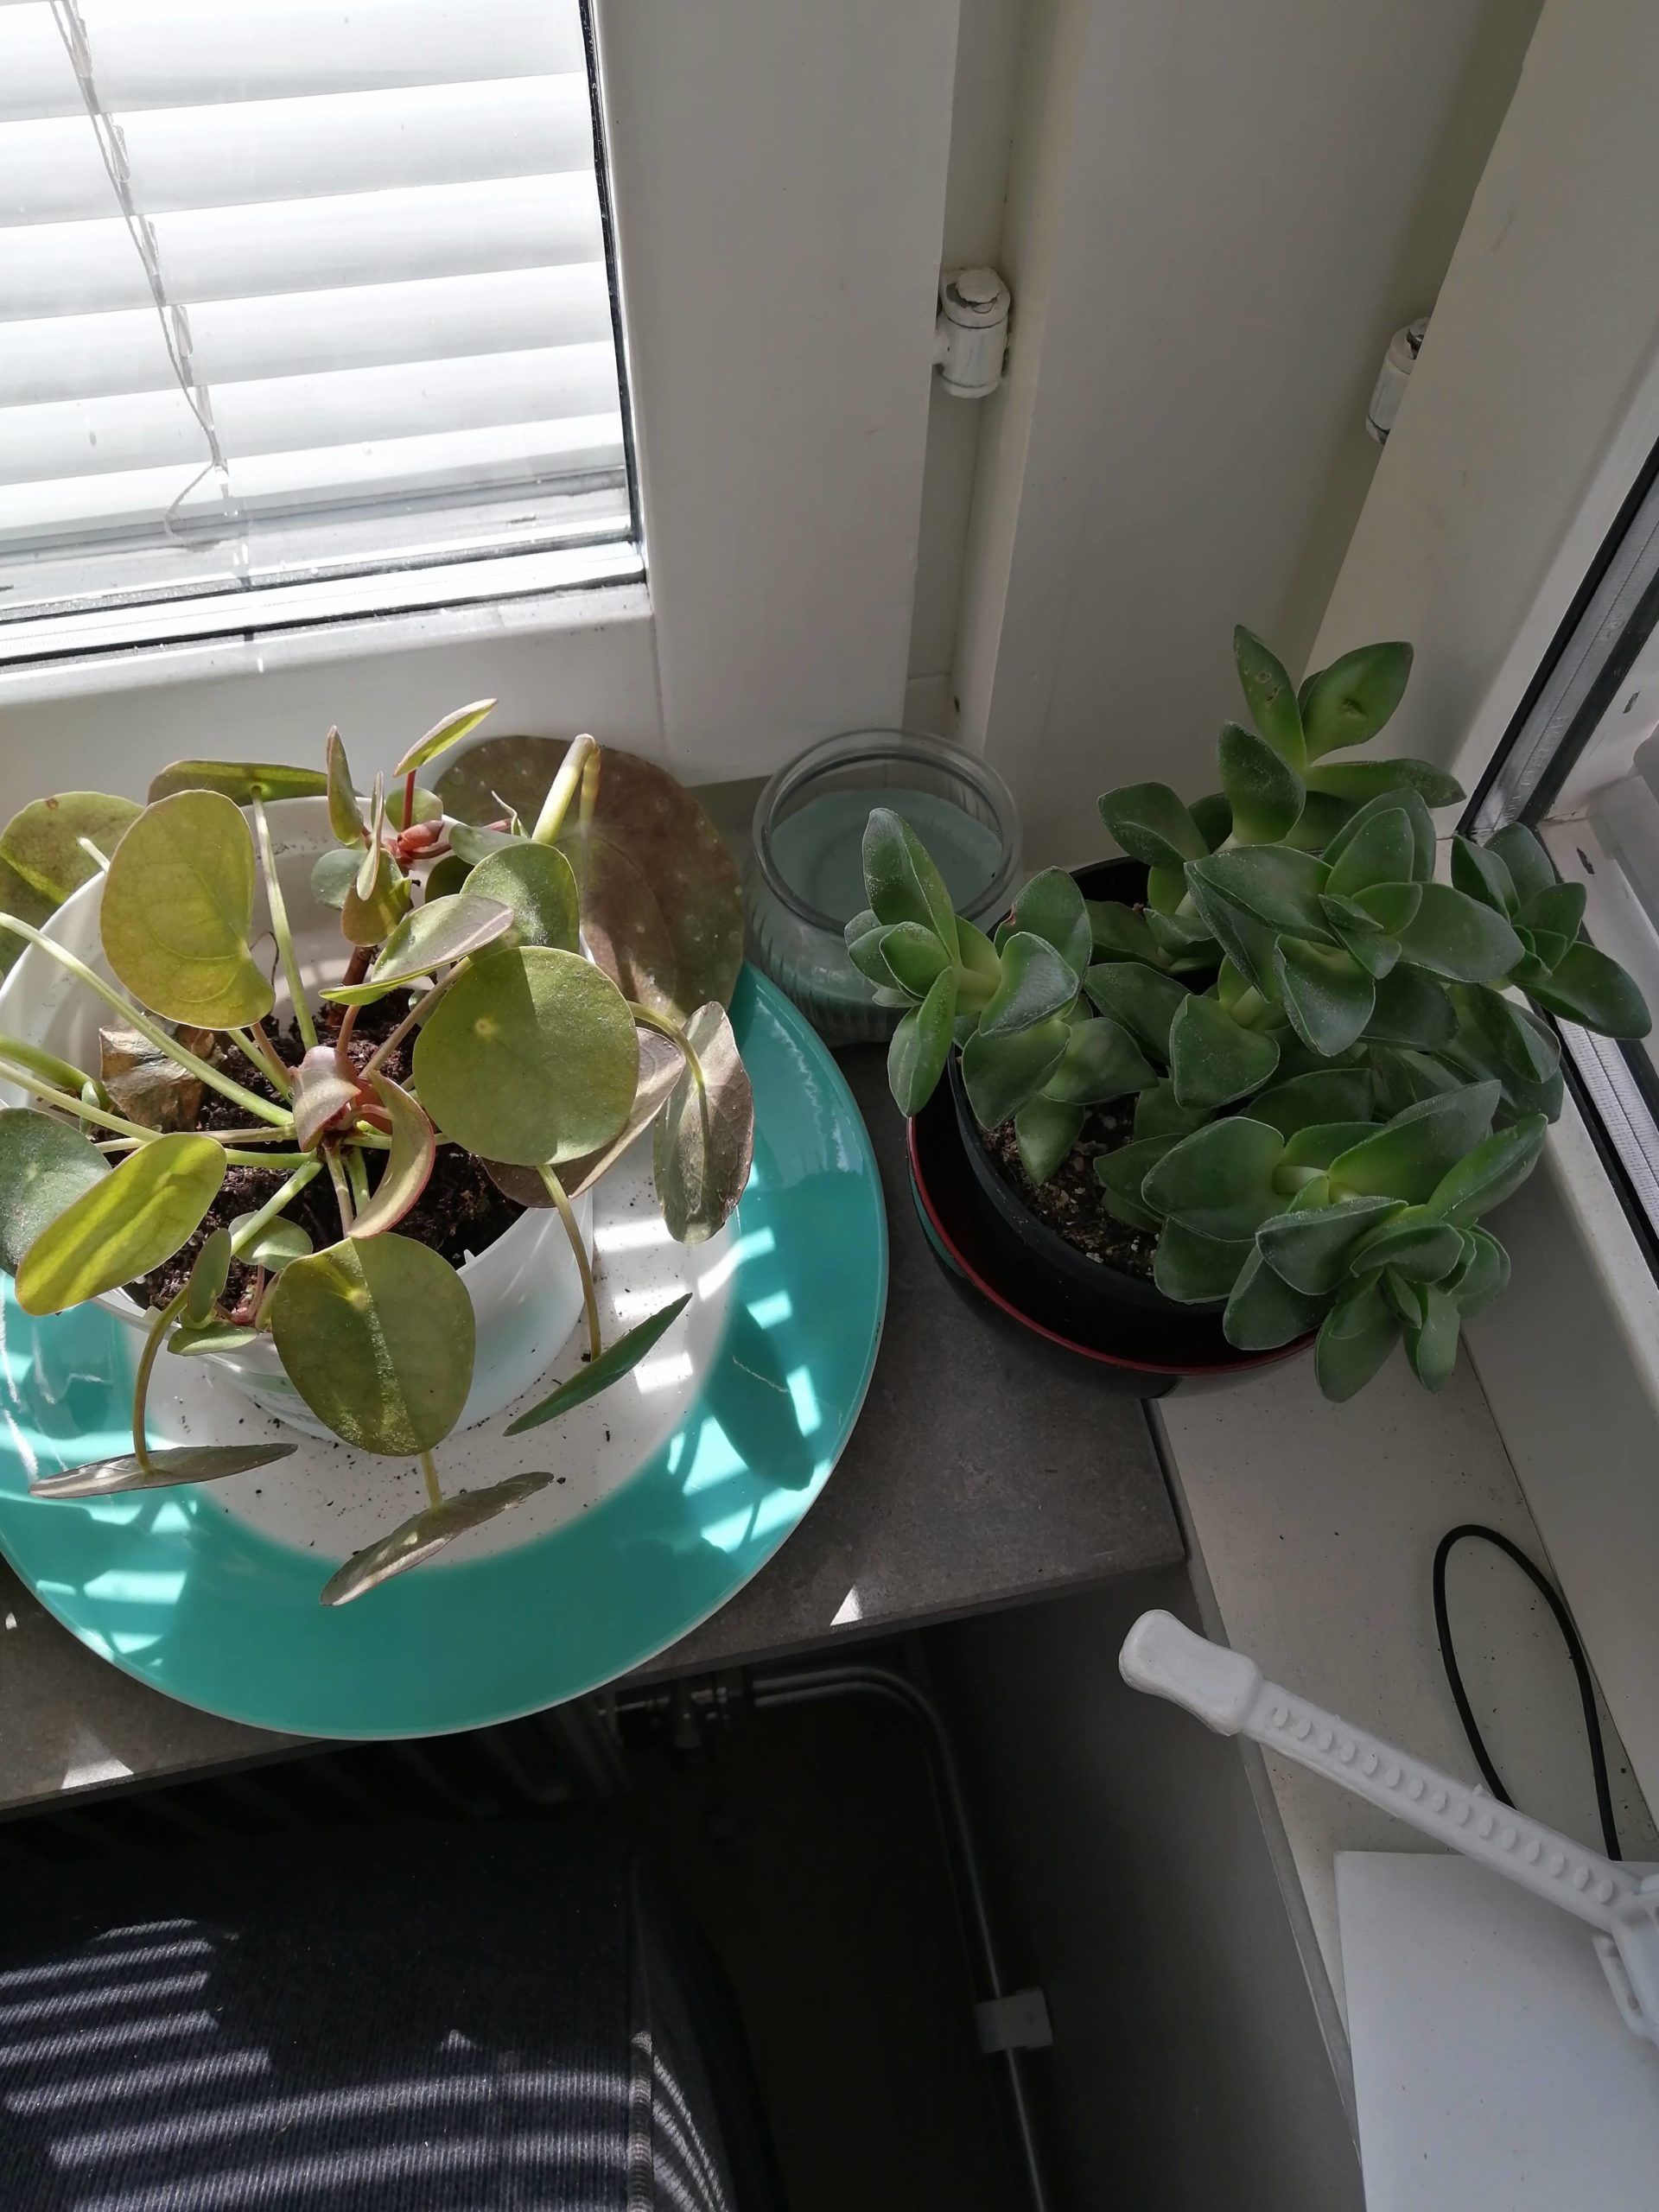 2 houseplants